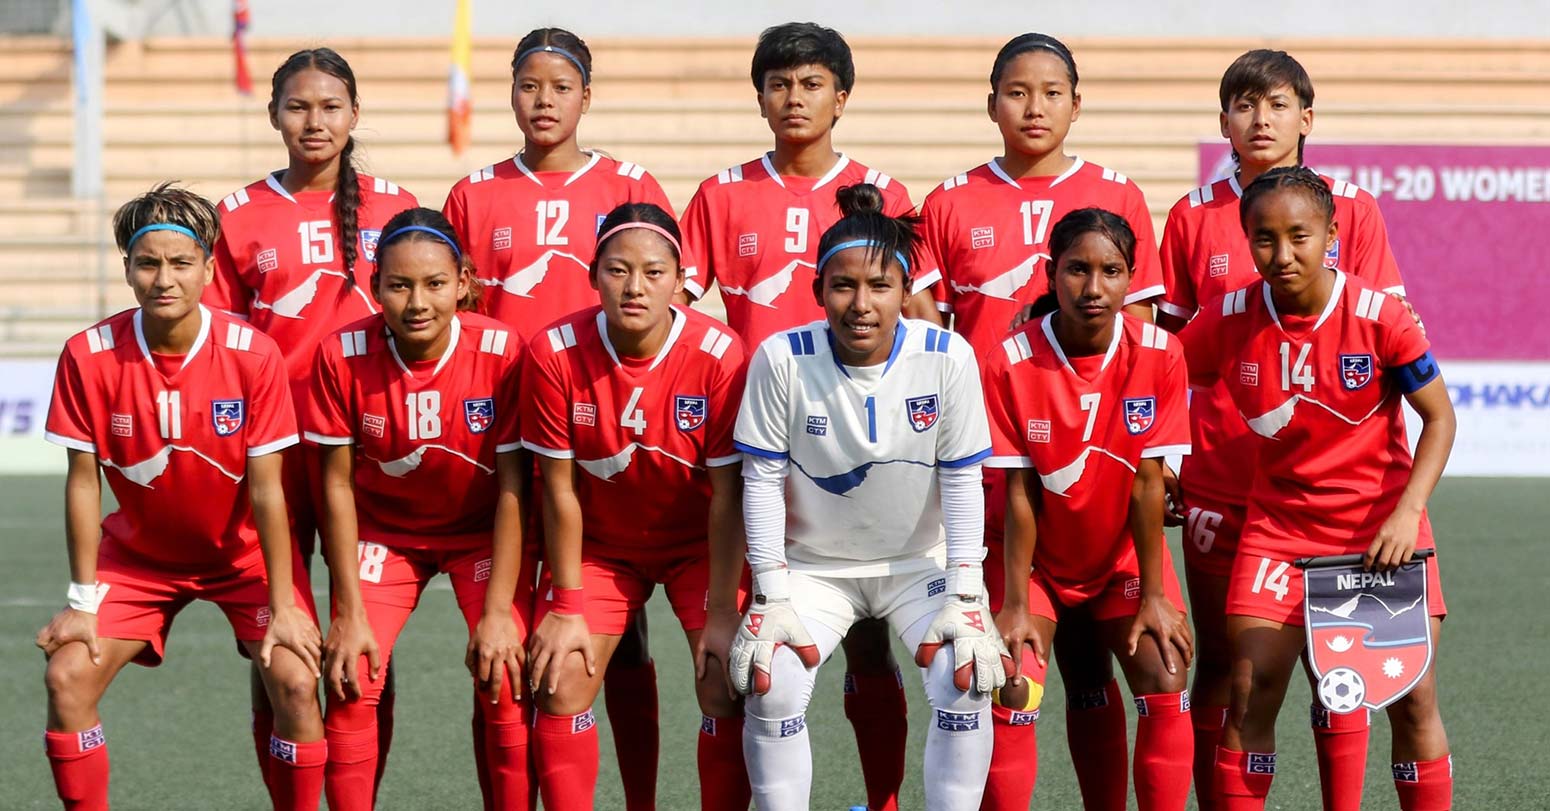 भारतलाई हराउँदै नेपाल साफ यू–२० महिला च्याम्पियनसिपको फाइनलमा